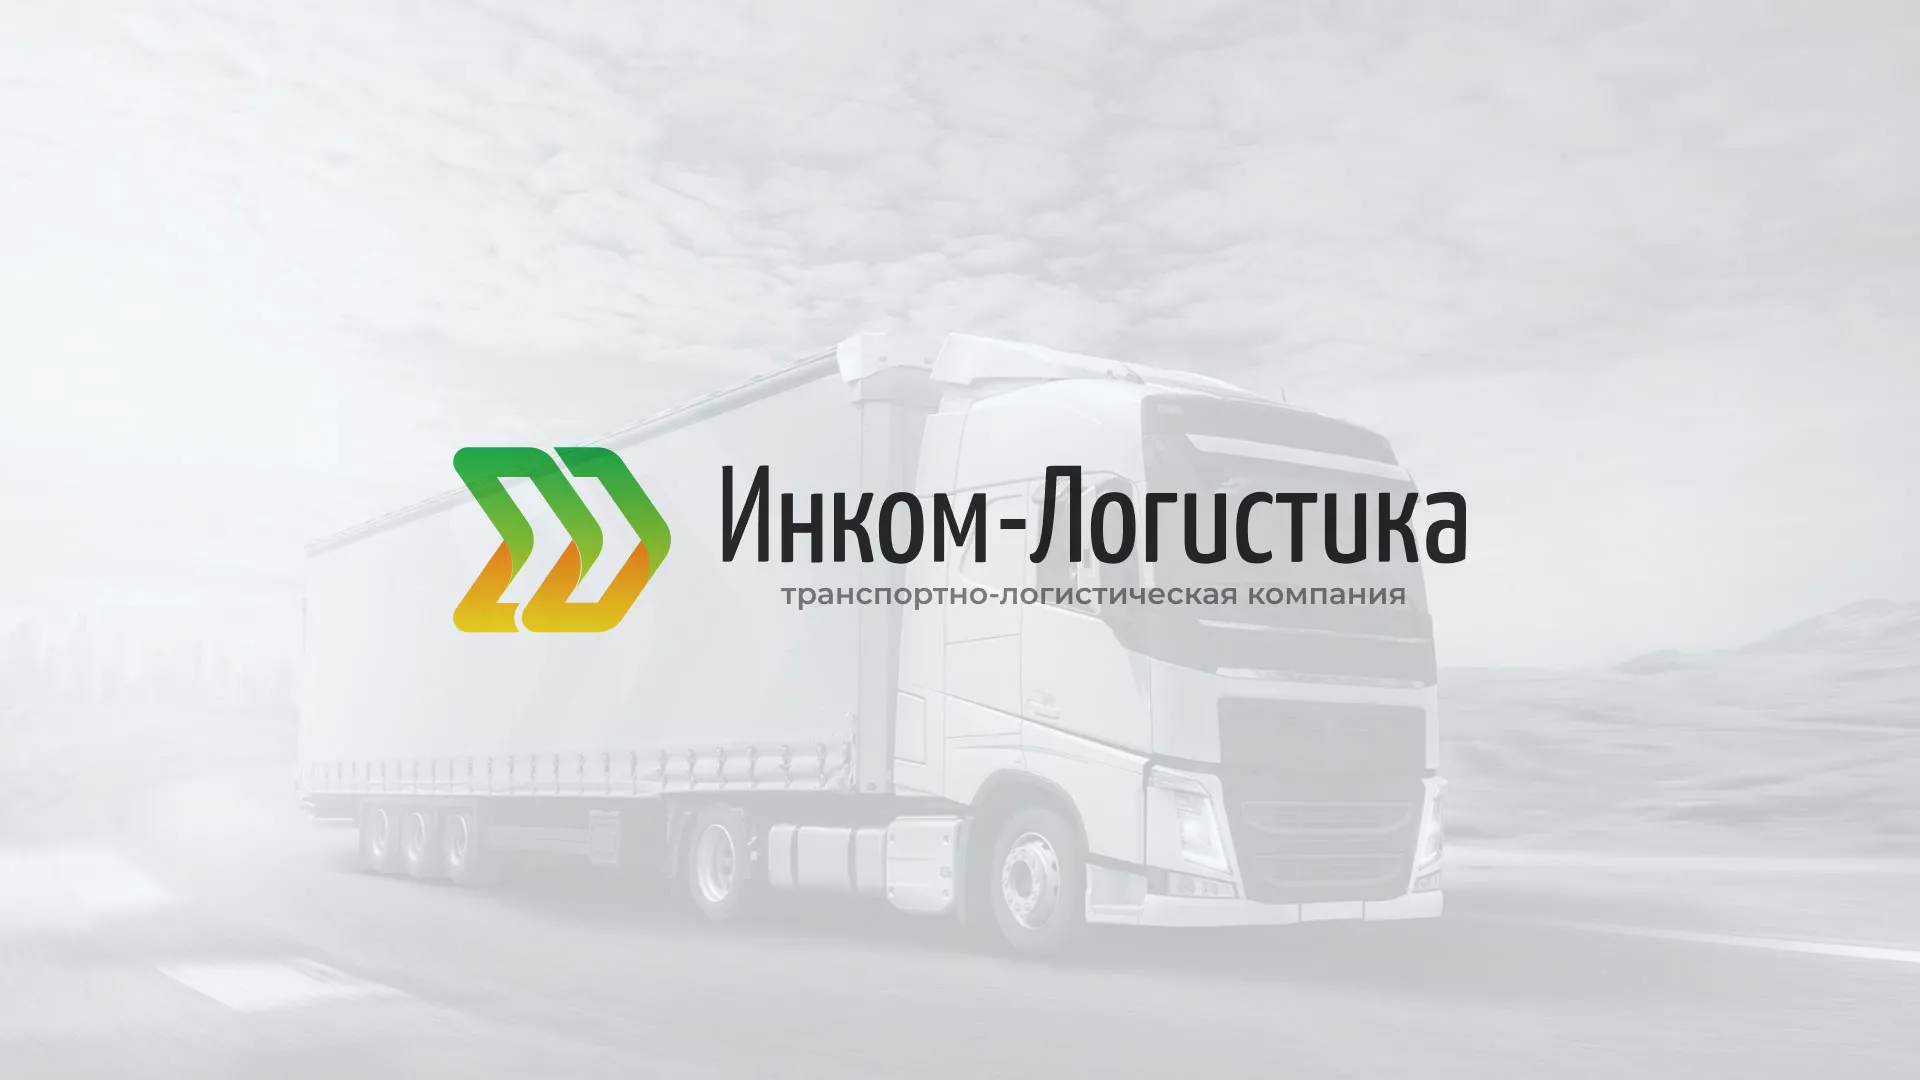 Разработка логотипа и сайта компании «Инком-Логистика» в Артёме